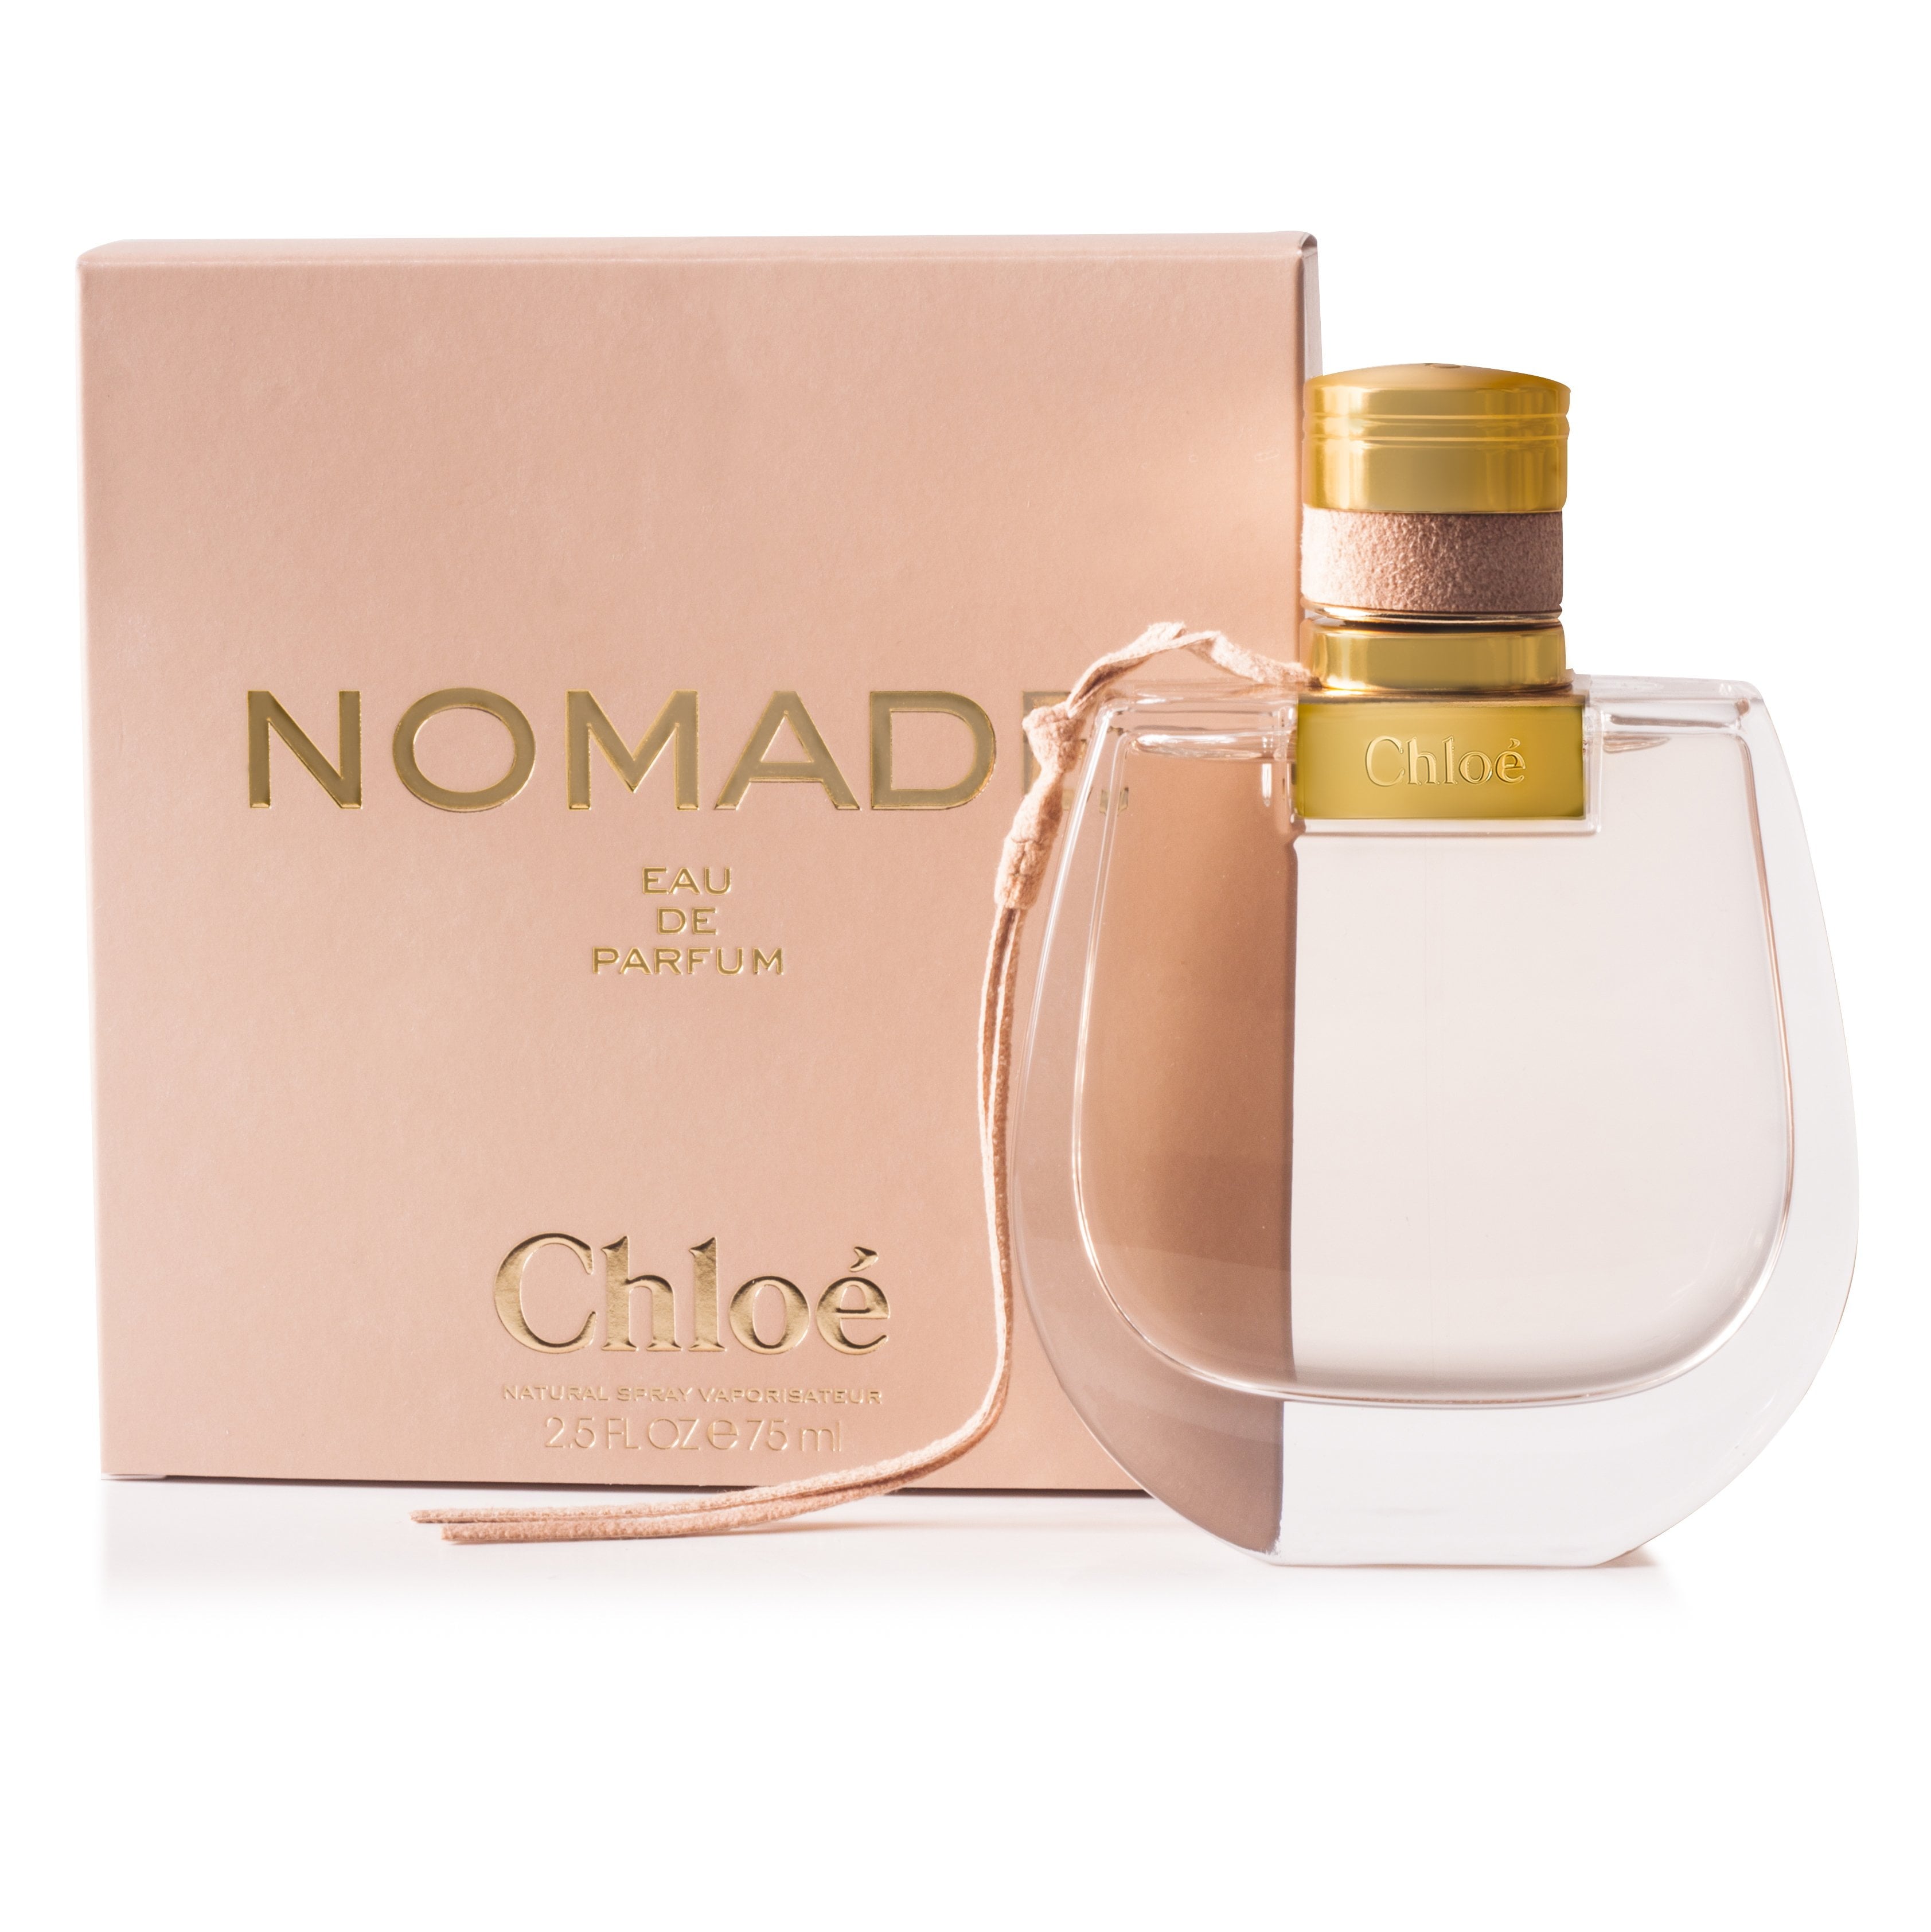 Chloé Nomade Type for women